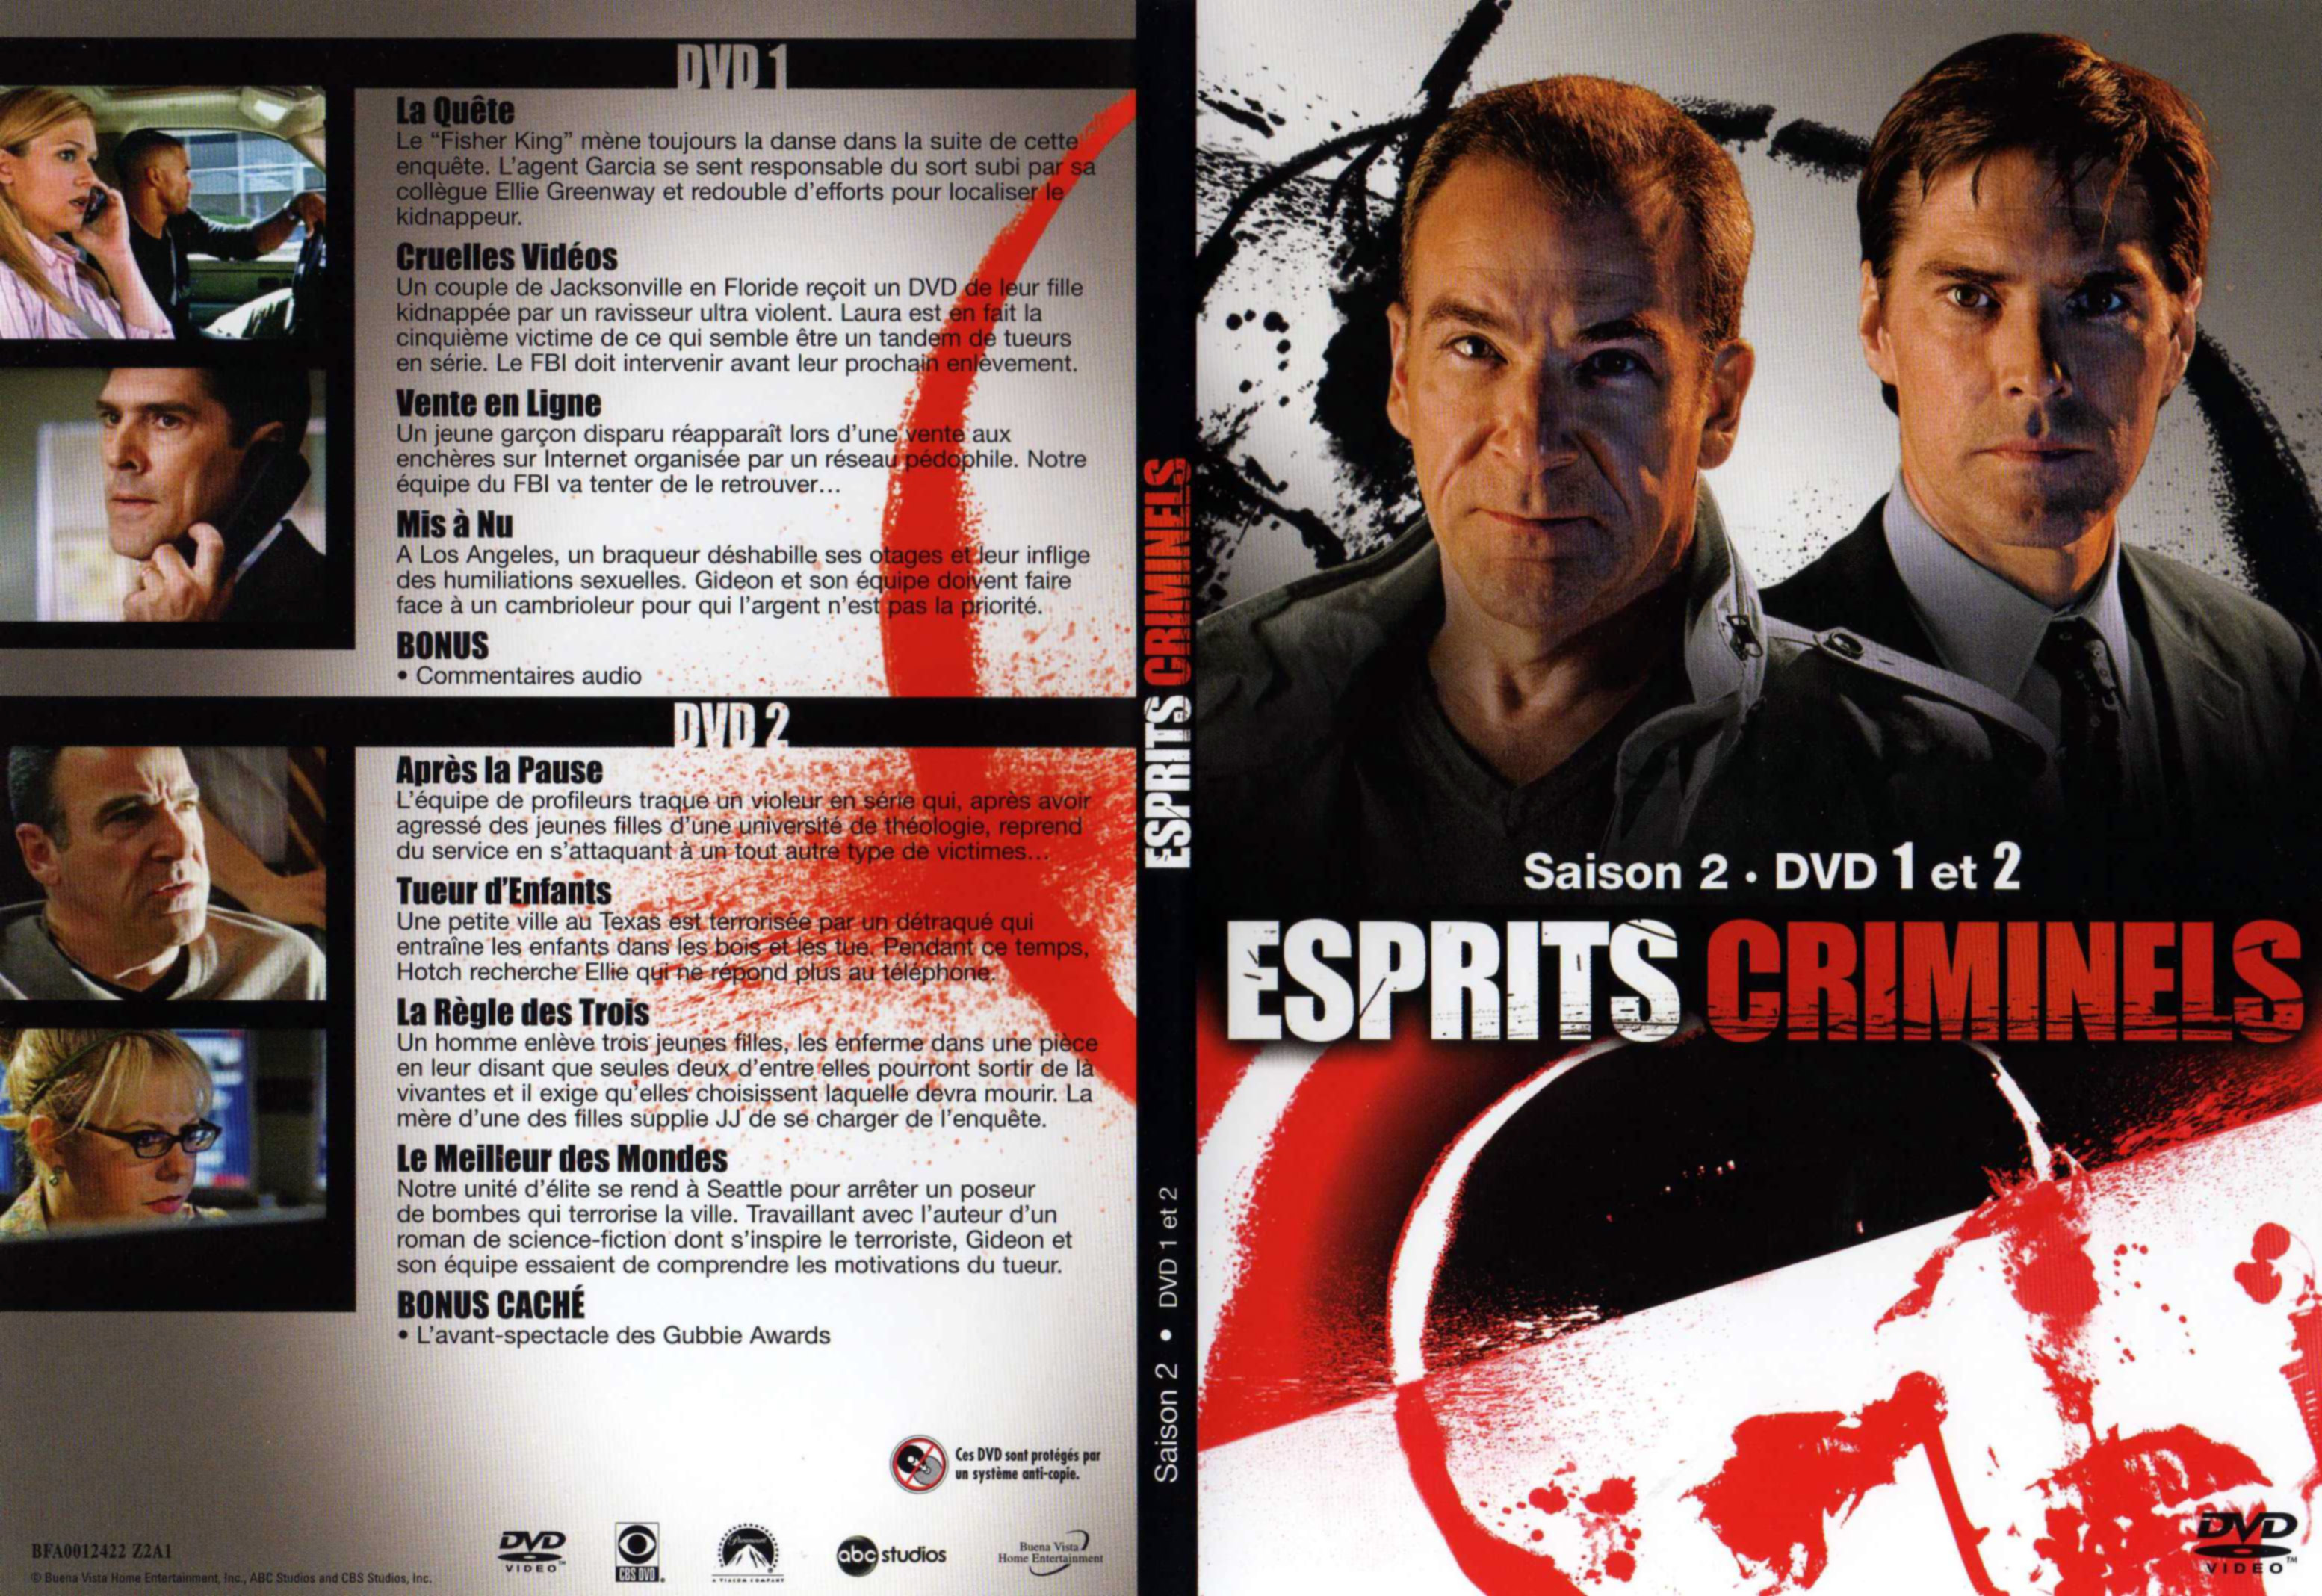 Jaquette DVD Esprits criminels Saison 2 DVD 1